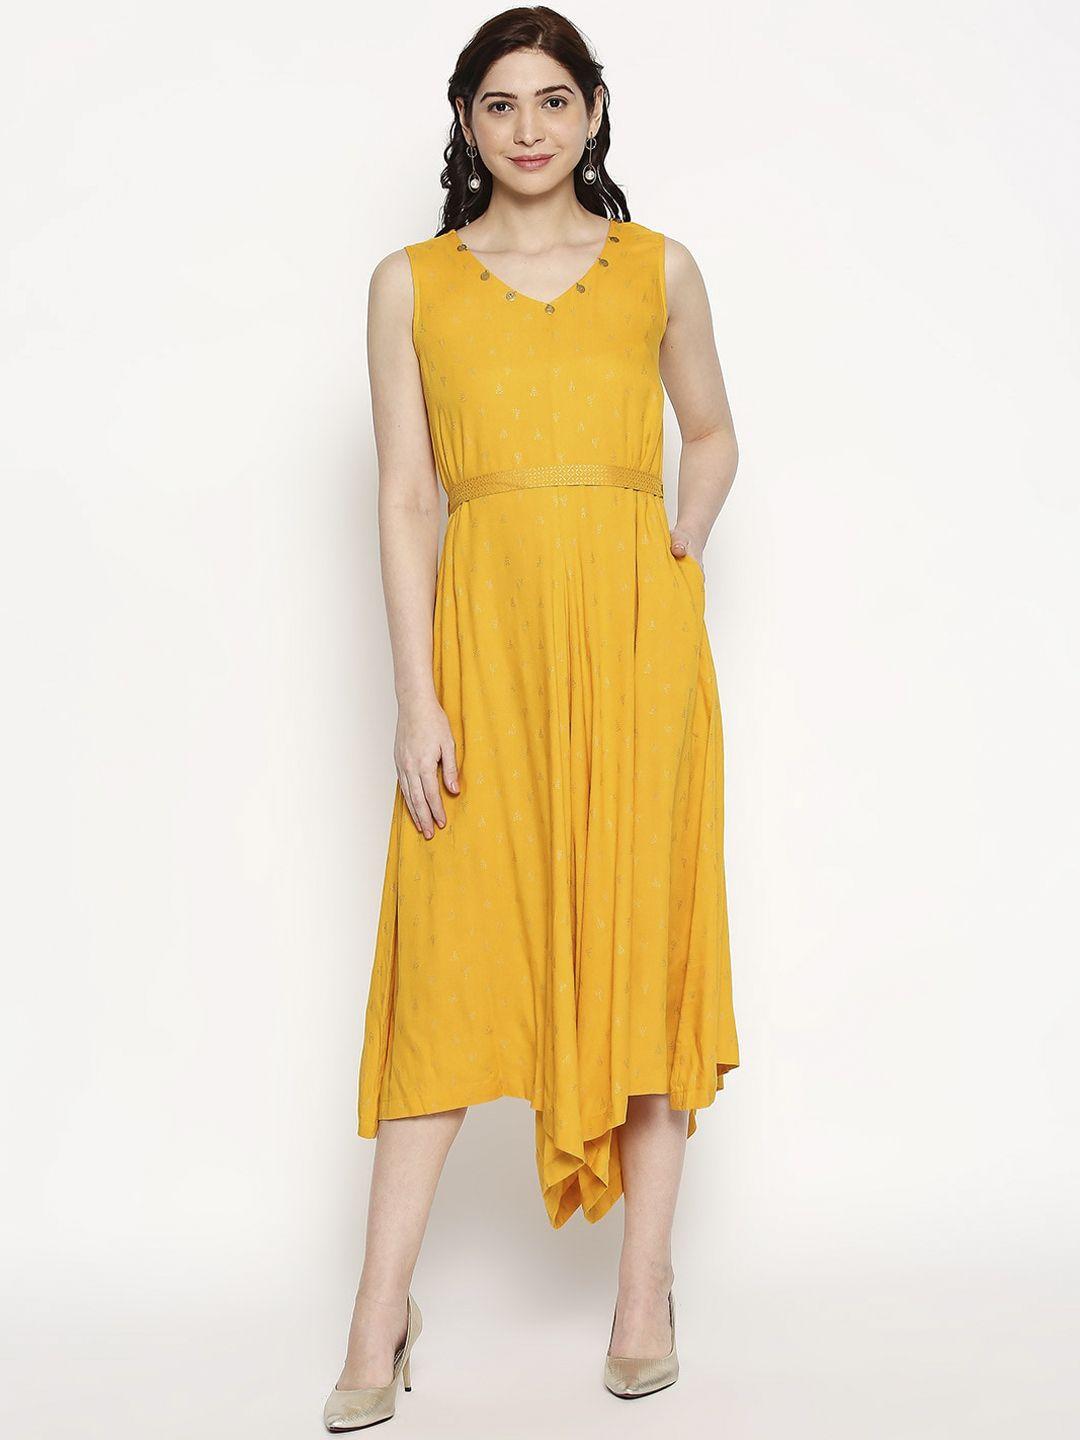 akkriti by pantaloons women mustard self design fit and flare dress